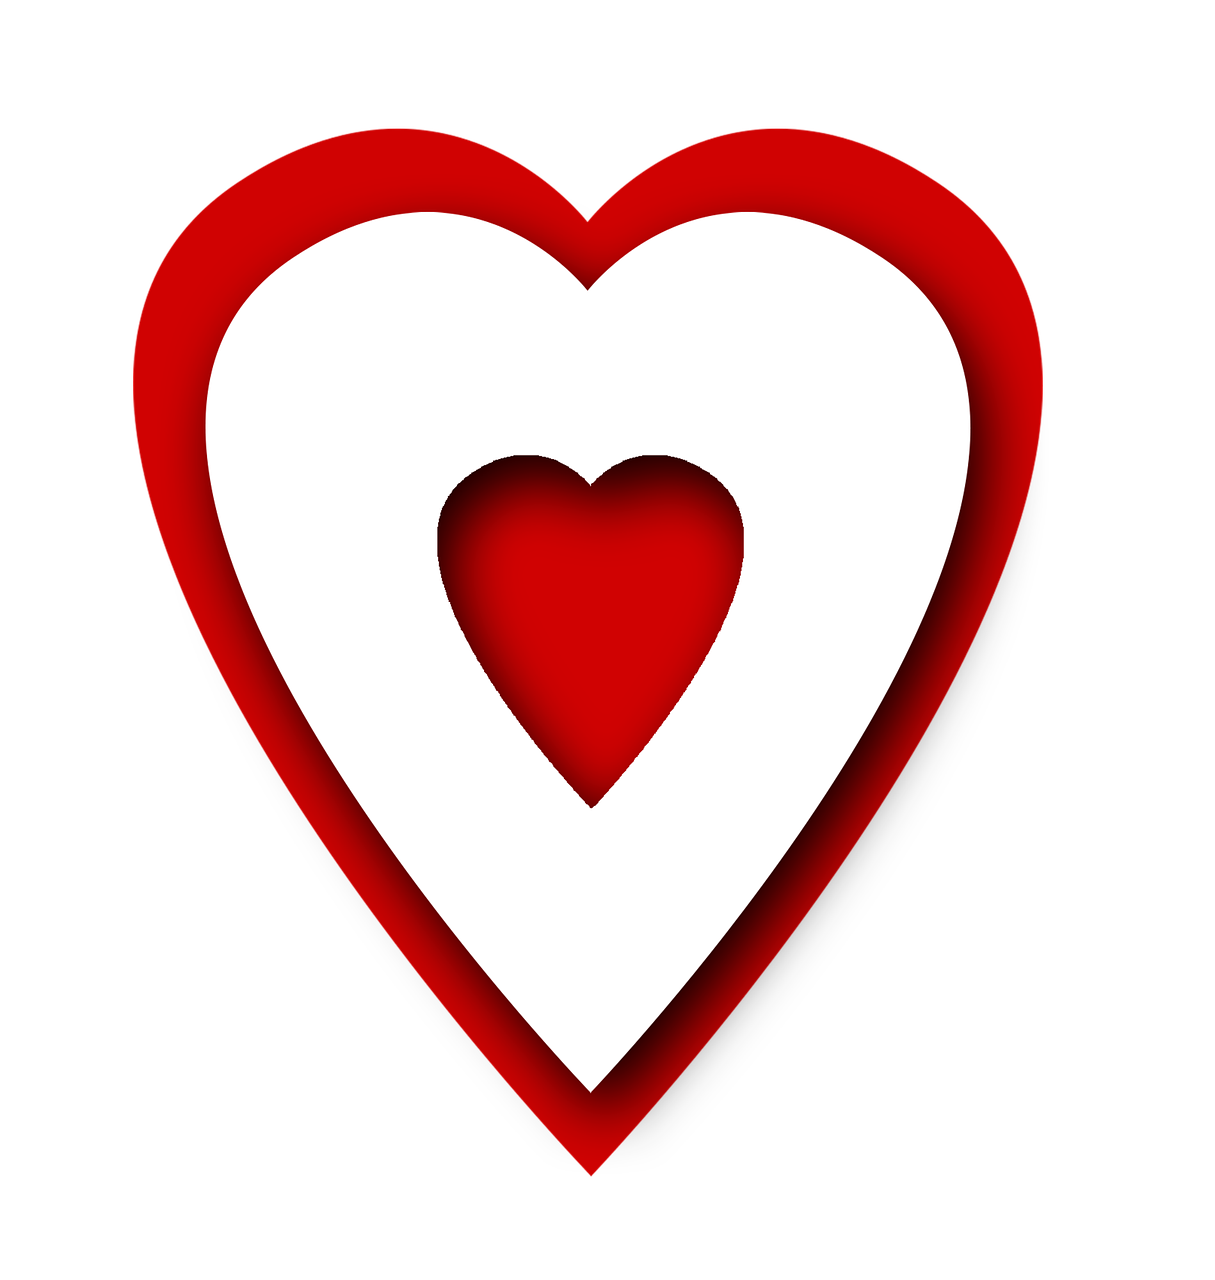 Символ сердечка. С красным сердцем. Логотип красное сердце. Фавикон сердце. Маленькое красное сердце.